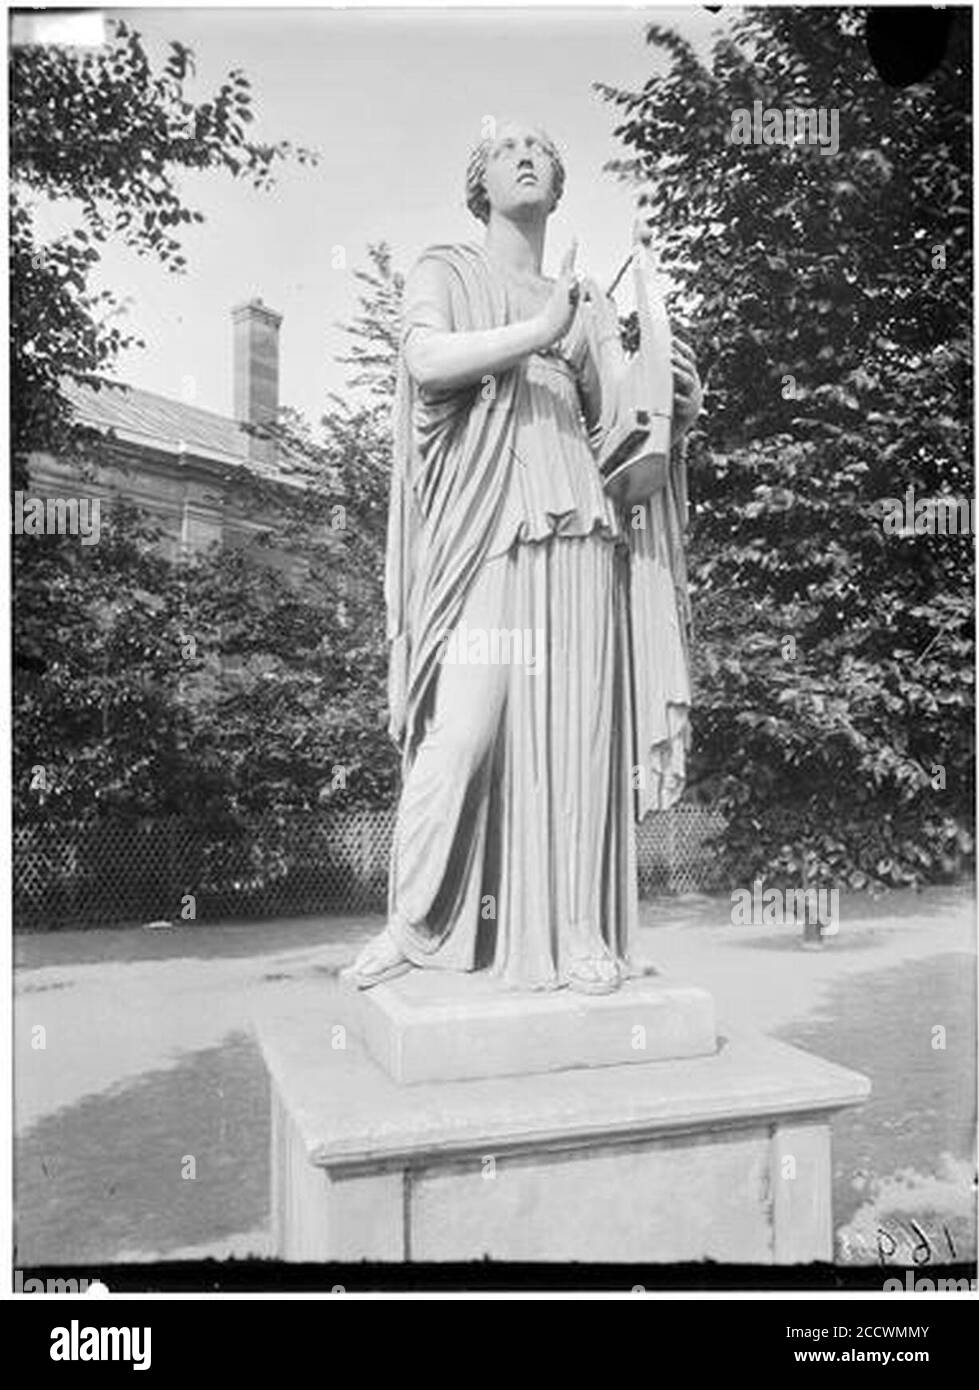 Jardin des Tuileries - Statue de Terpsichore Erato - Paris 01 - Médiathèque de l'architecture et du patrimoine - Stock Photo